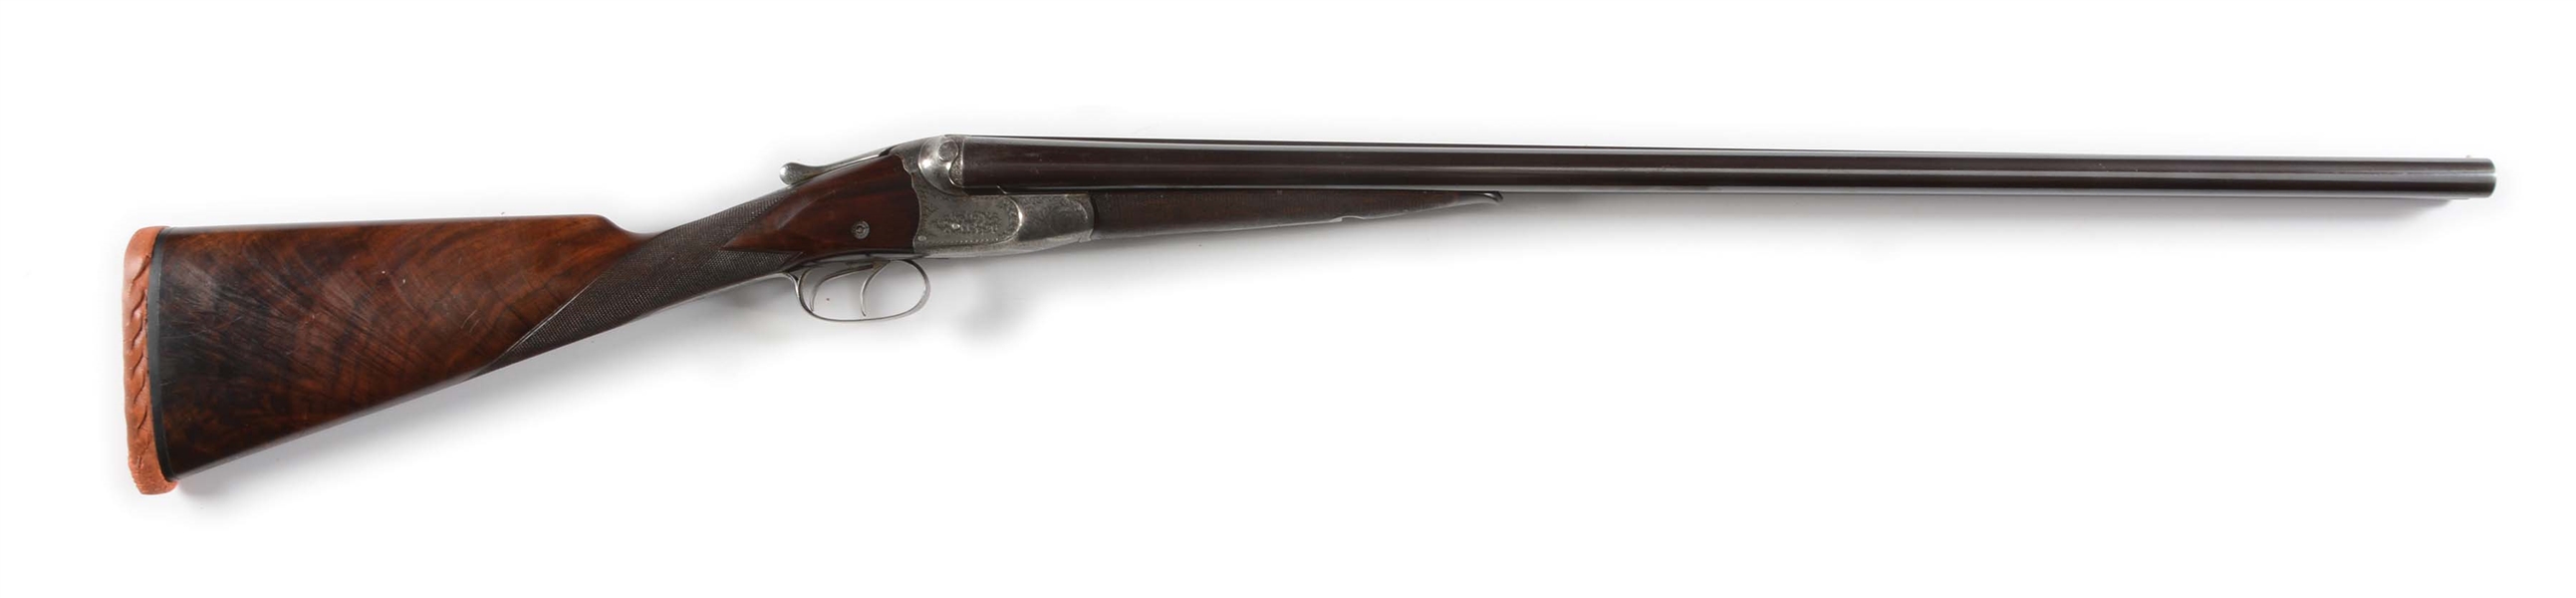 (A) FINE W.W. GREENER "G" EJECTOR G45 SHOTGUN, EXHIBITED AT CHICAGO EXHIBITION, 1893.